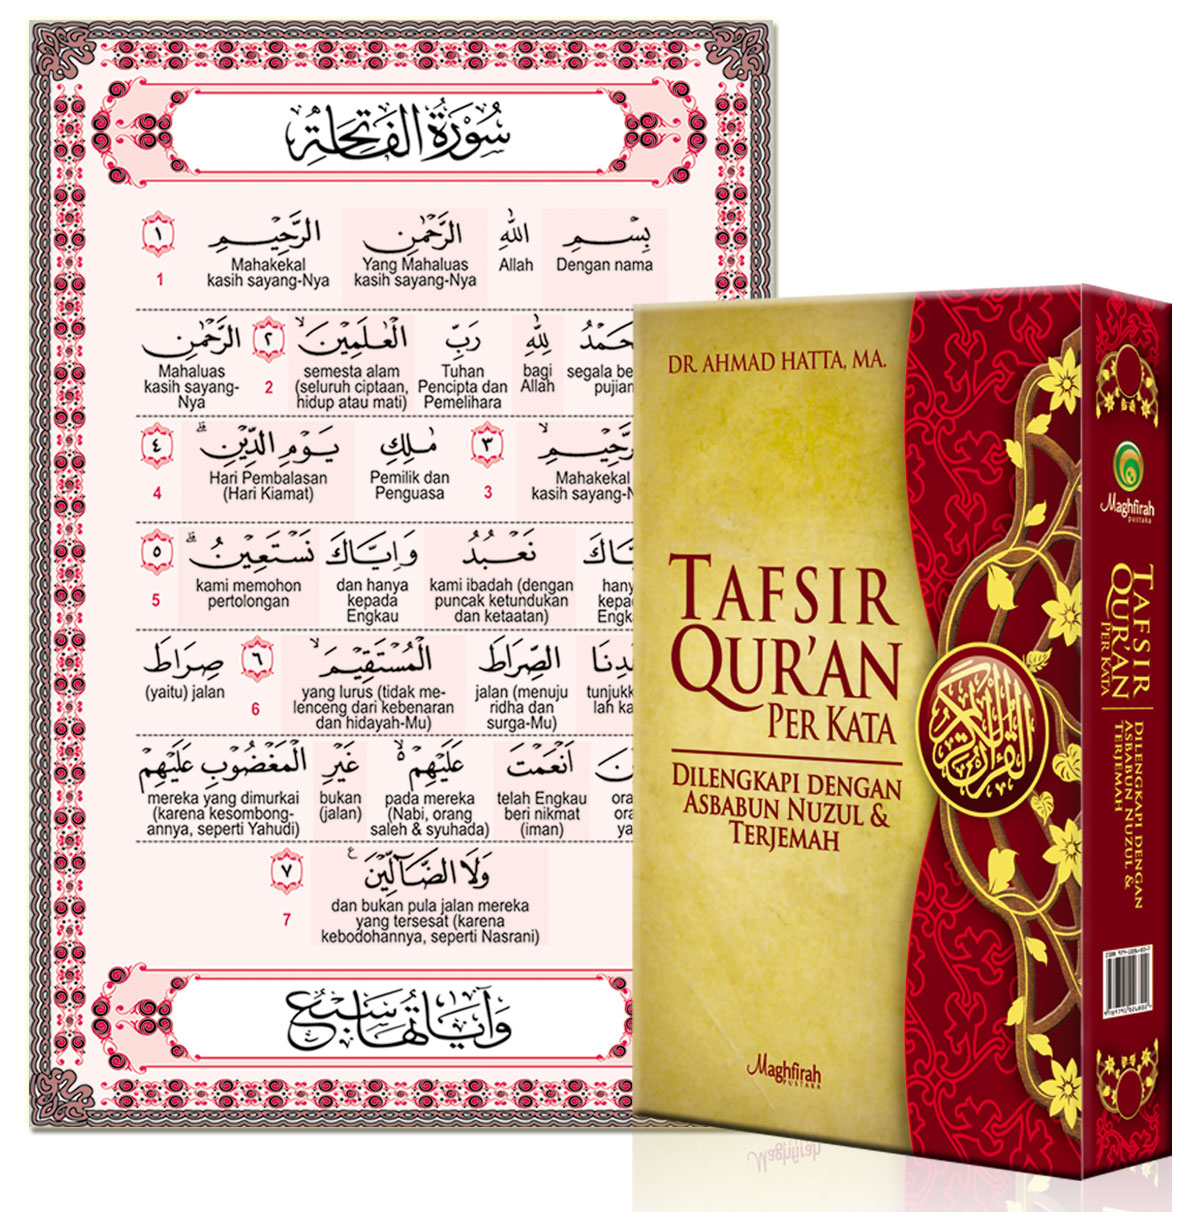 Buy Tafsir Quran Per Kata